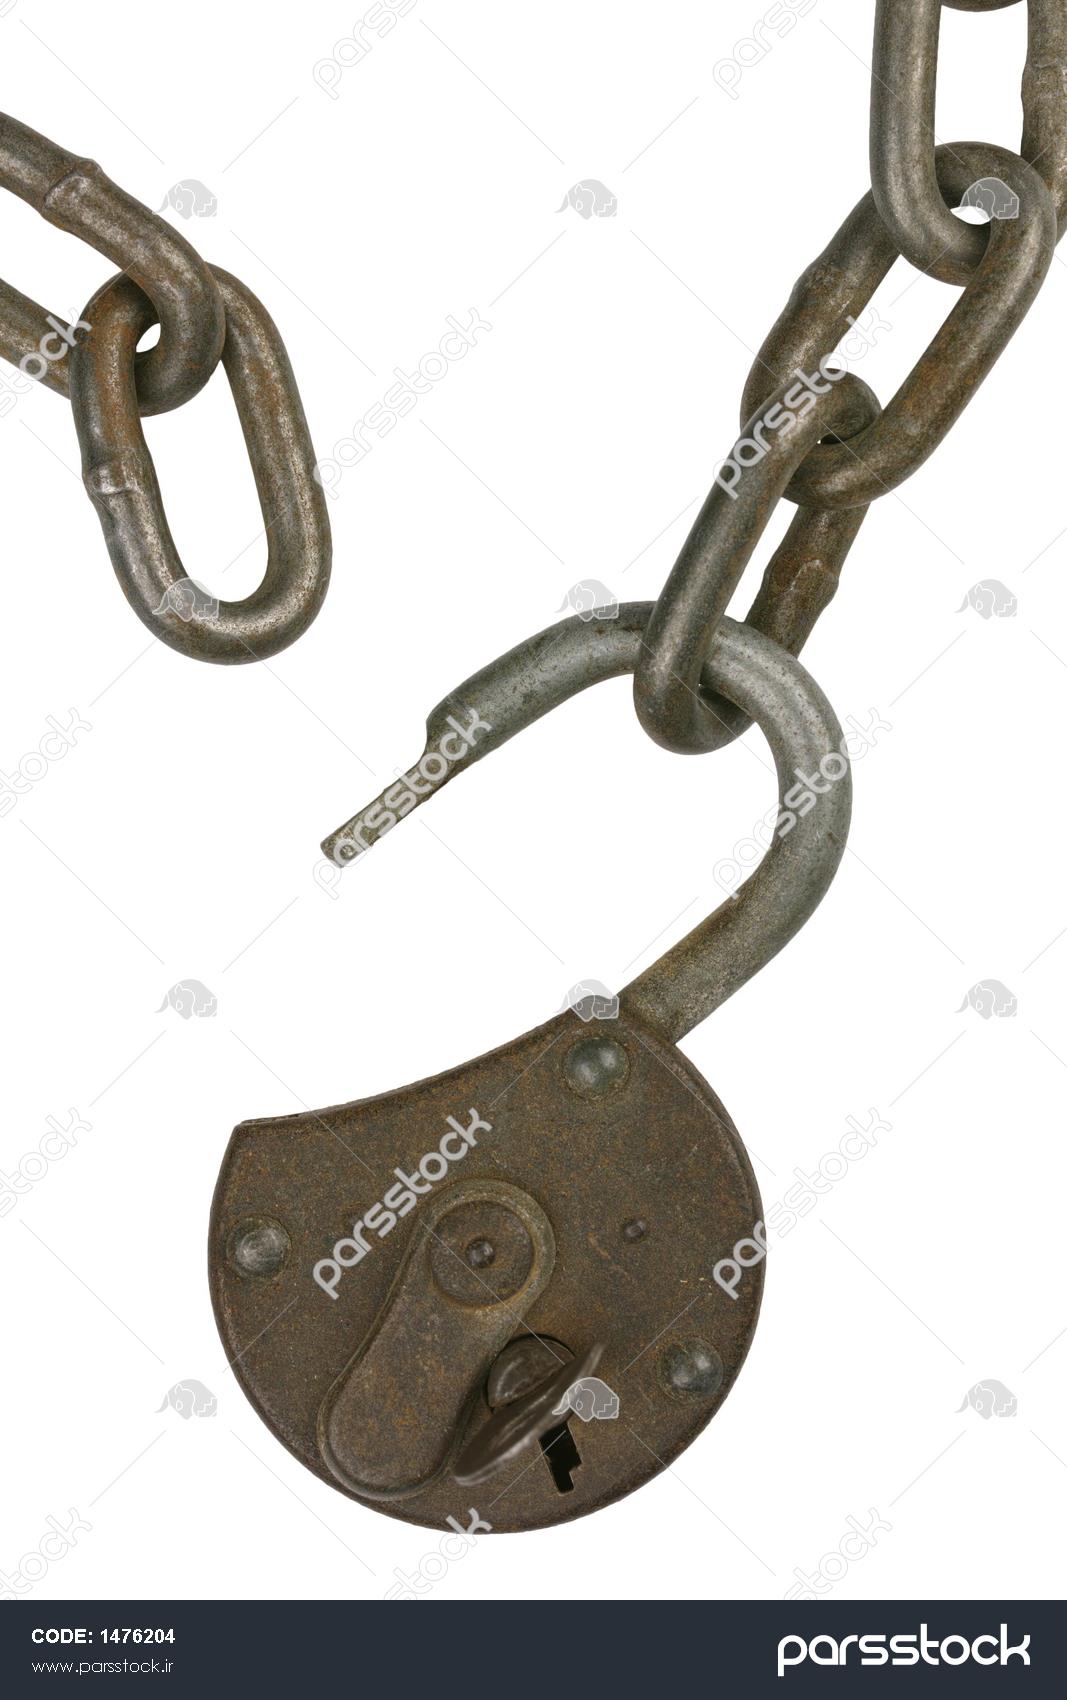 1476204-یک-قفل-باز-قدیمی-با-زنجیره